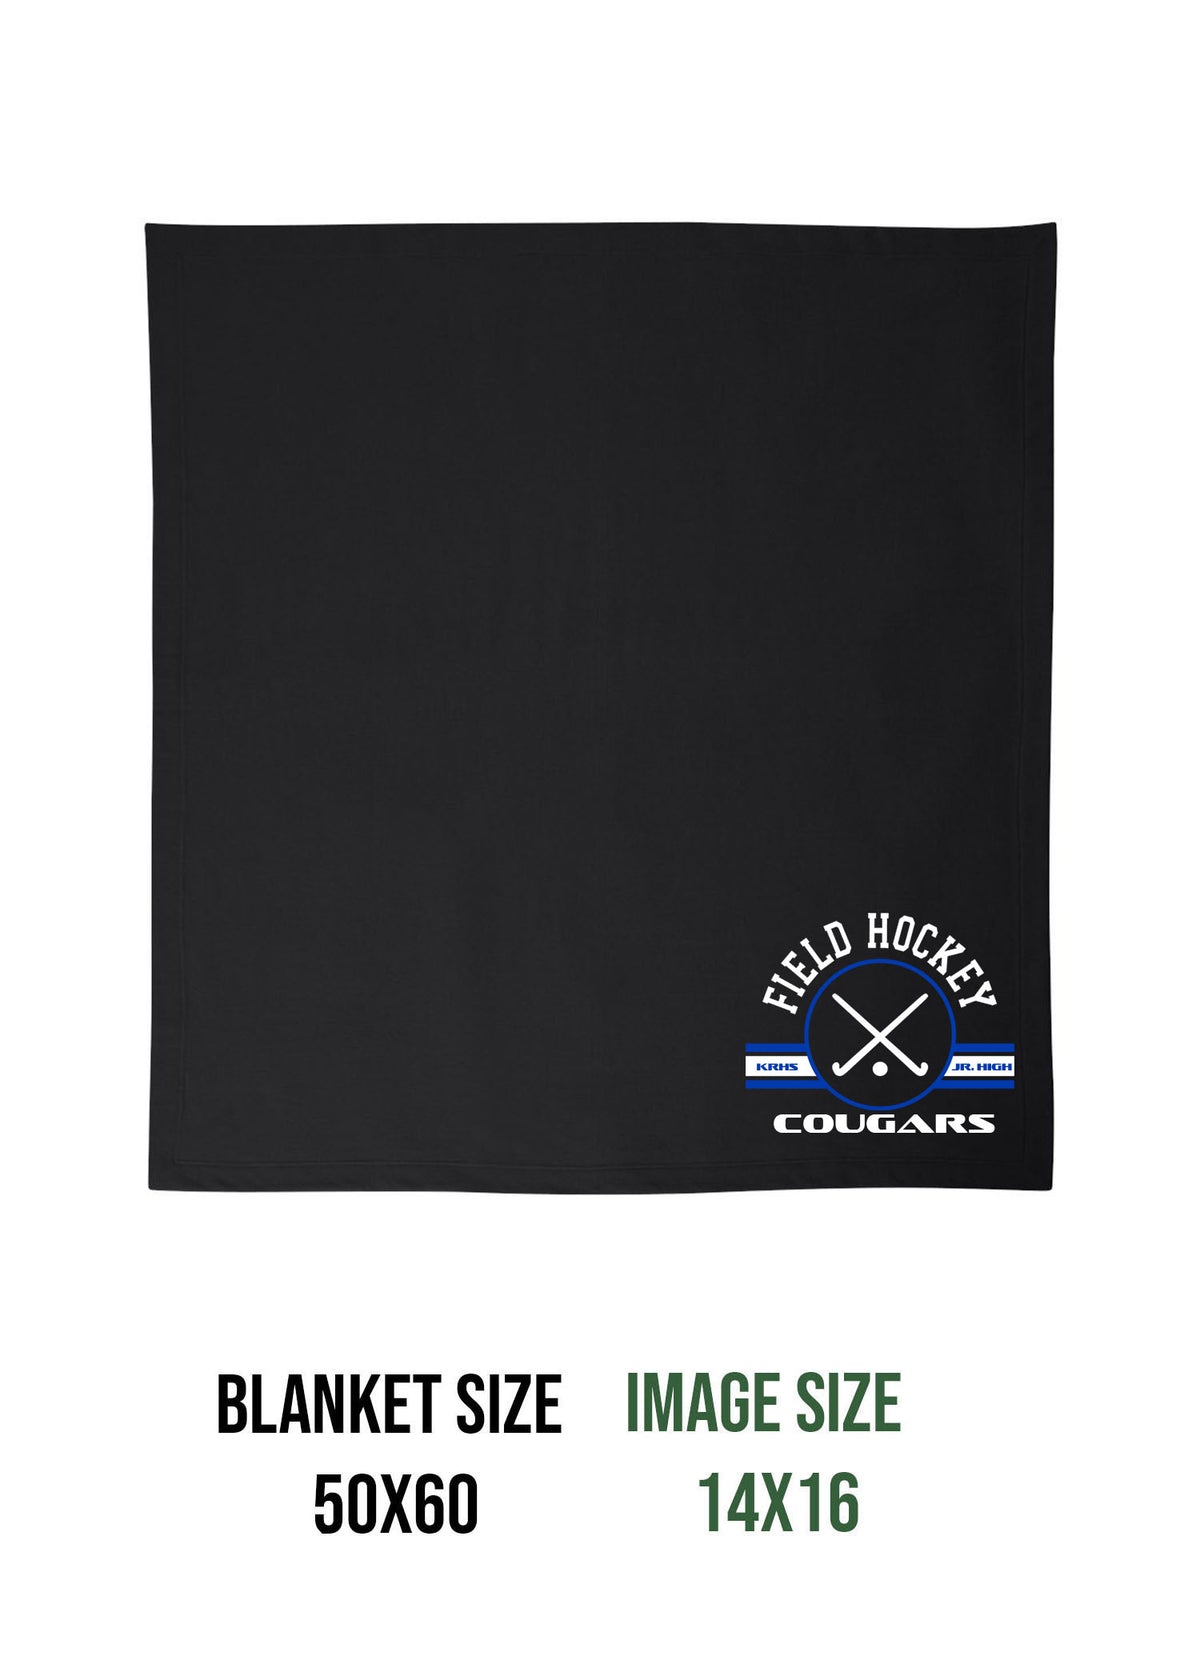 Kittatinny Jr High Field Hockey Design 1 Blanket